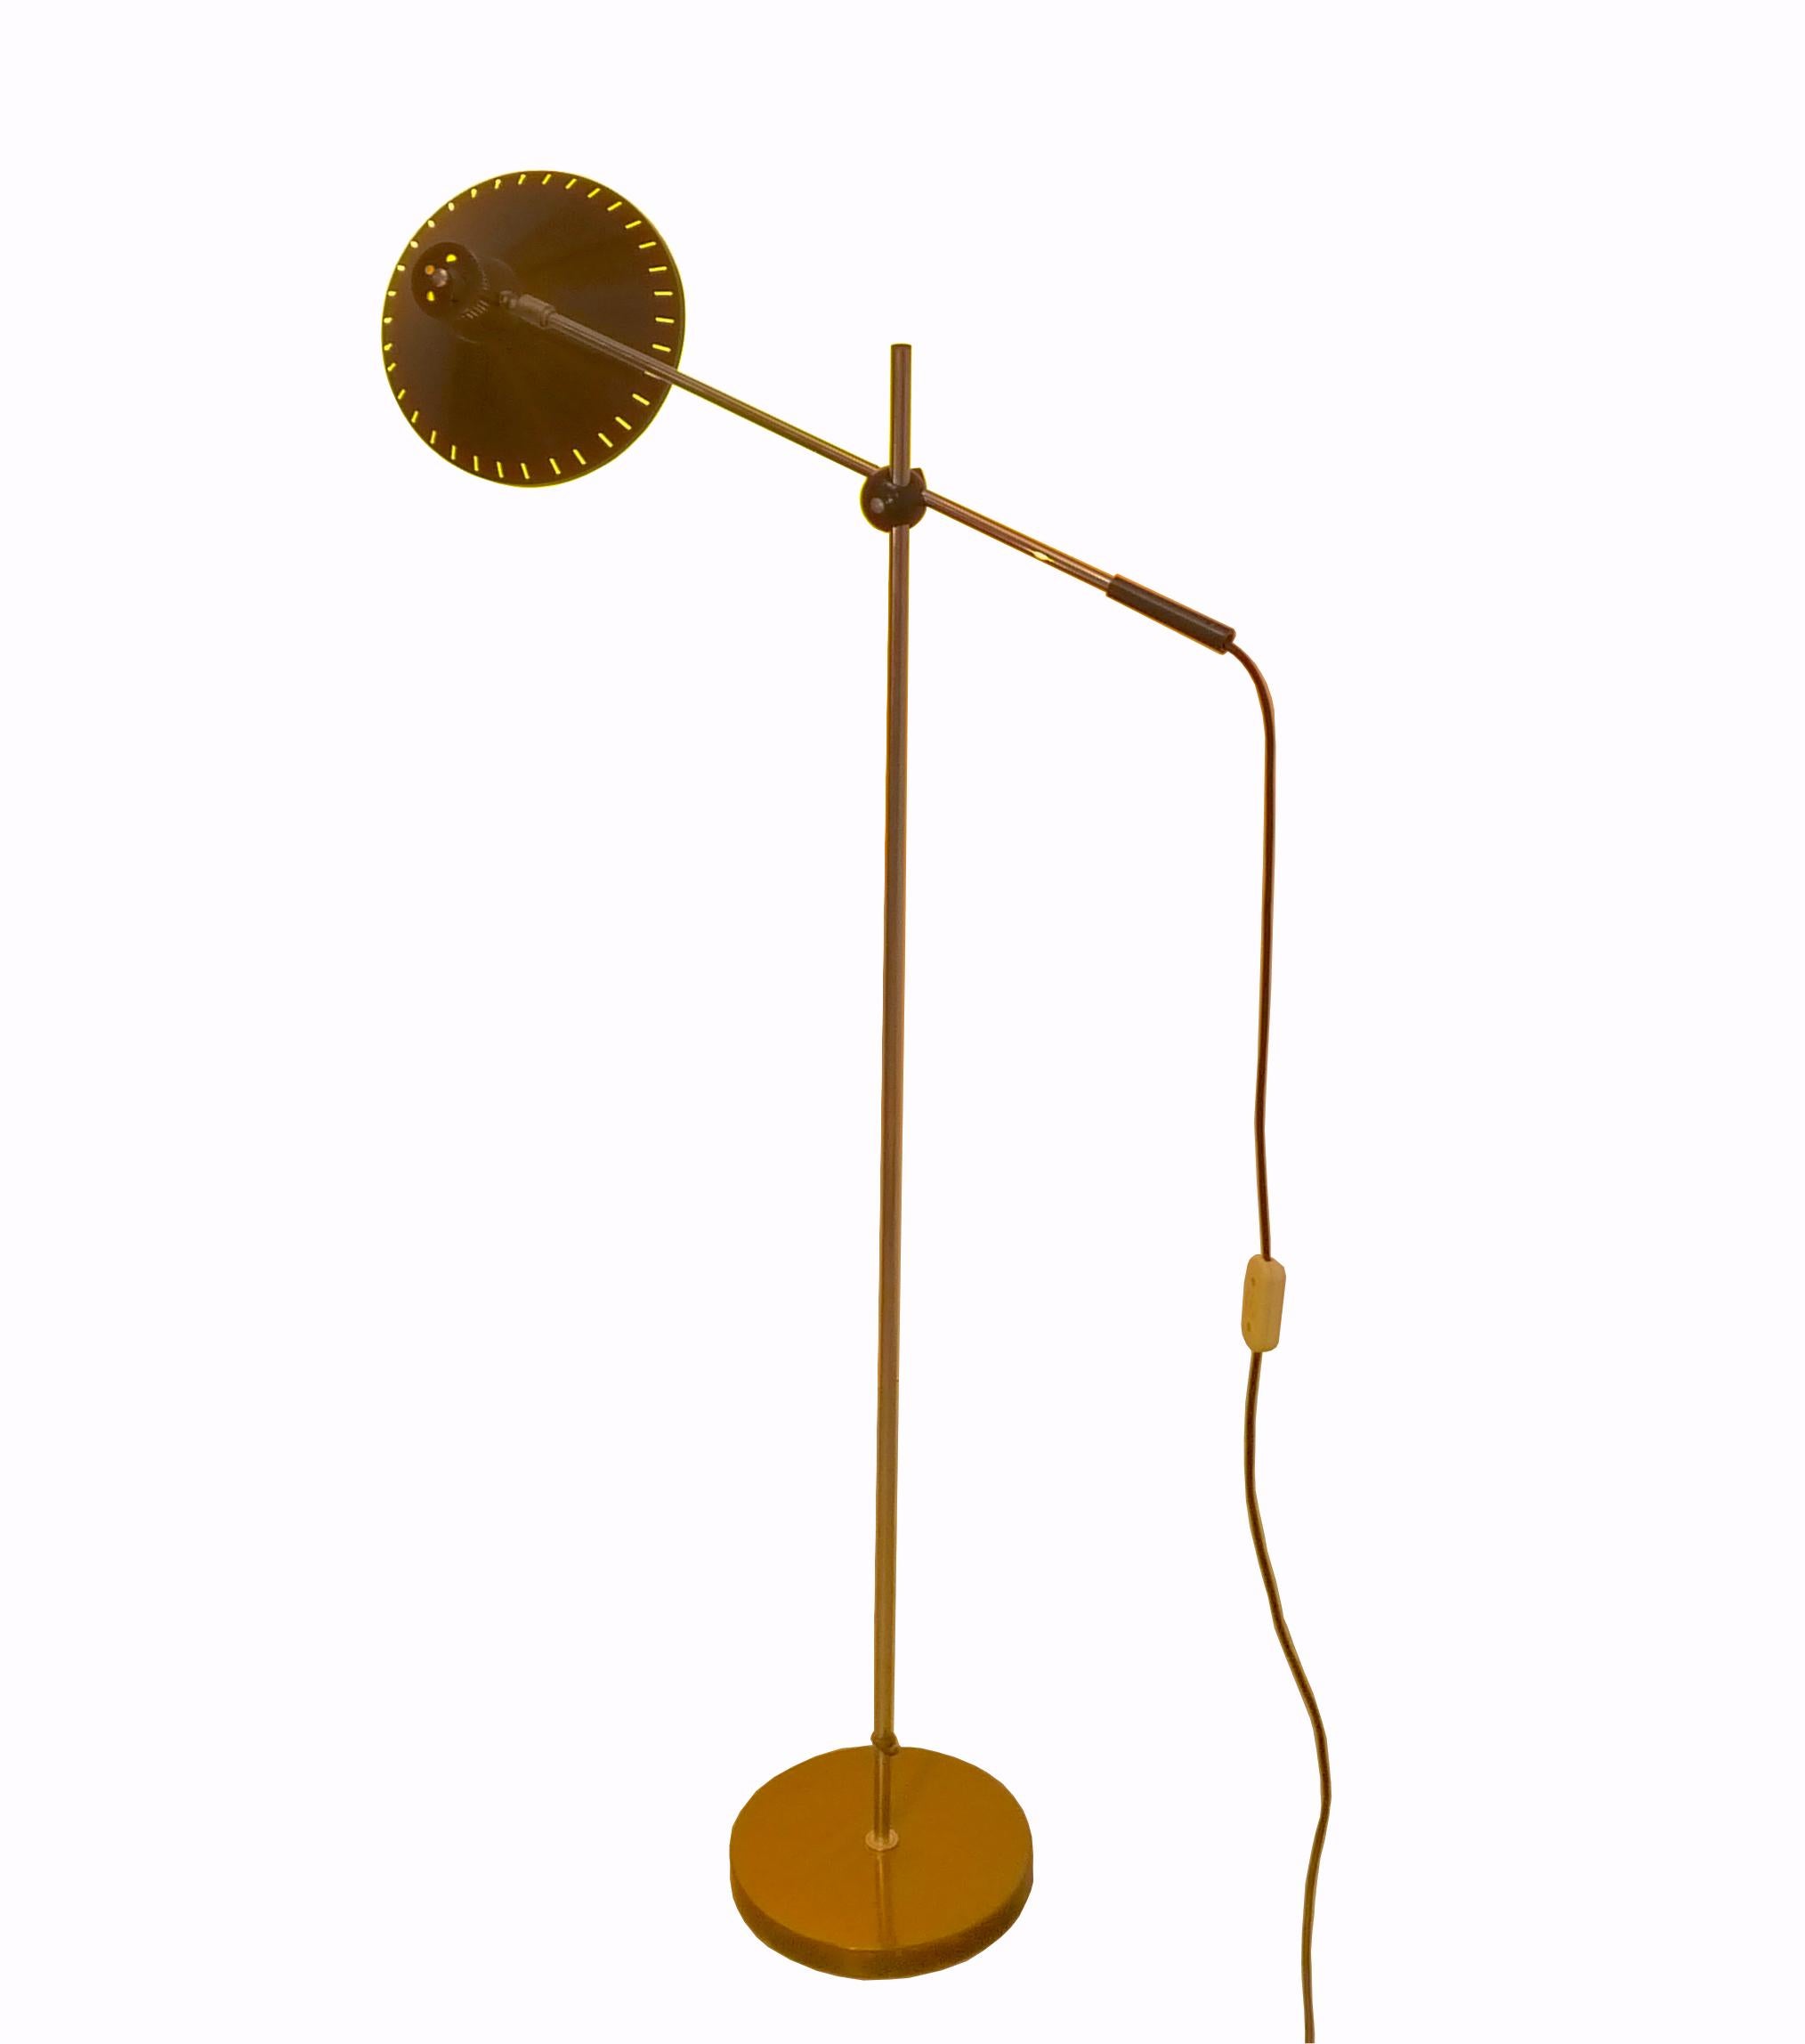 Lampadaire Anvia réglable conçu par J. Hoogervorst vers 1960. Cette lampe en aluminium est entièrement réglable et convient pour un éclairage direct pour lire ou un éclairage indirect sur le mur ou le plafond. Compte tenu de son âge, ce lampadaire